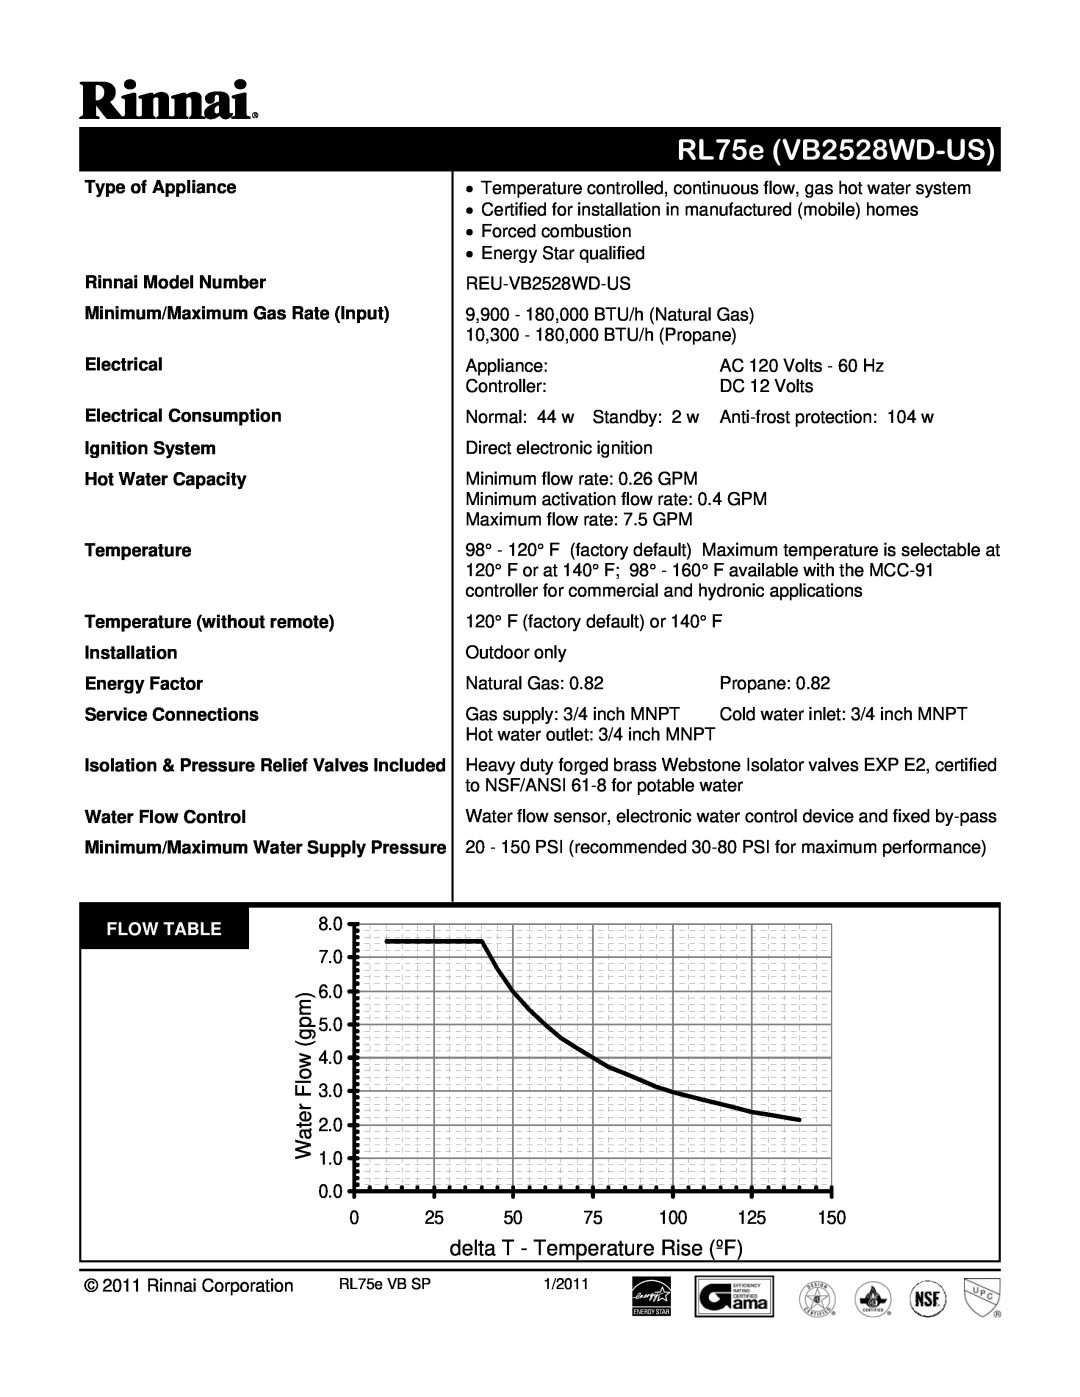 Rinnai REU-VB2528WD-US manual RL75e VB2528WD-US, Flow3.0, delta T - Temperature Rise ºF 